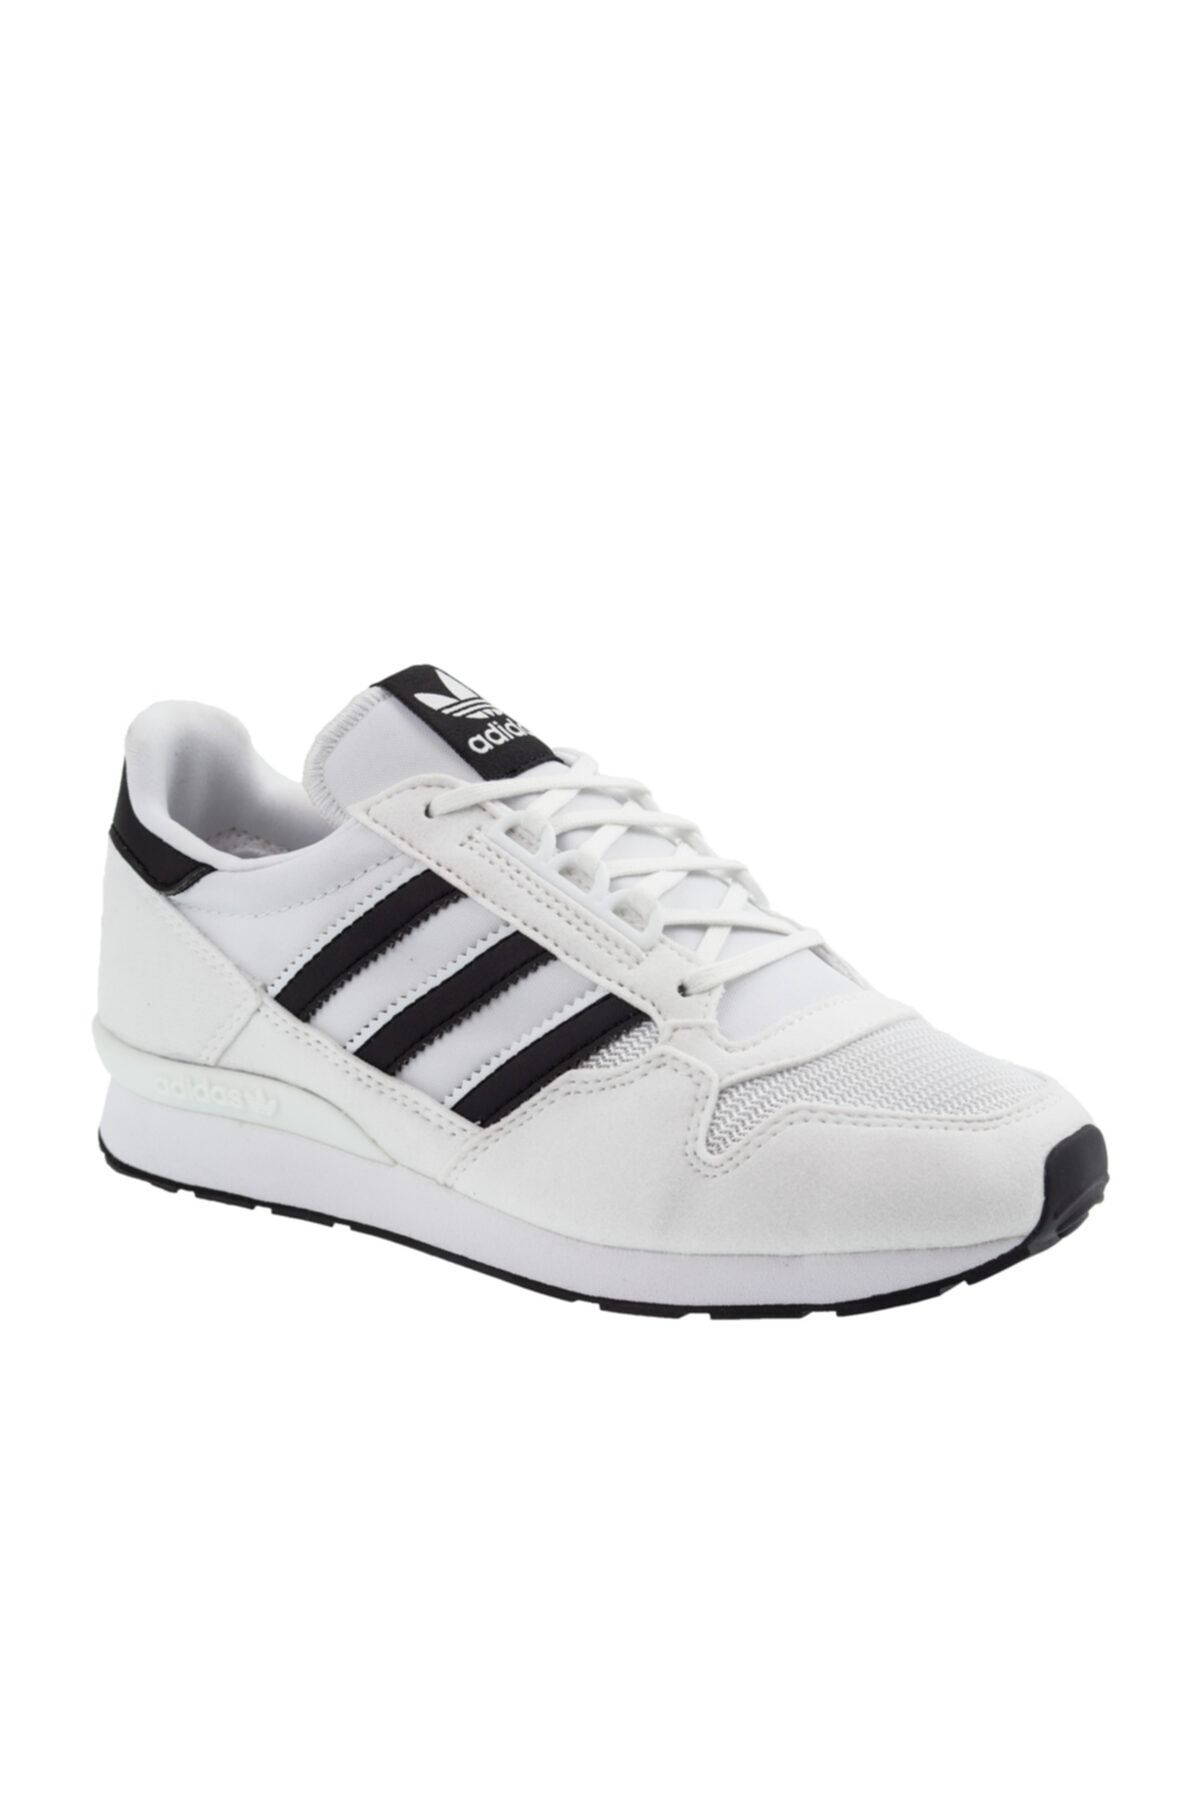 adidas Tenis Zx 500 Beyaz Spor Ayakkabı (FW4036)